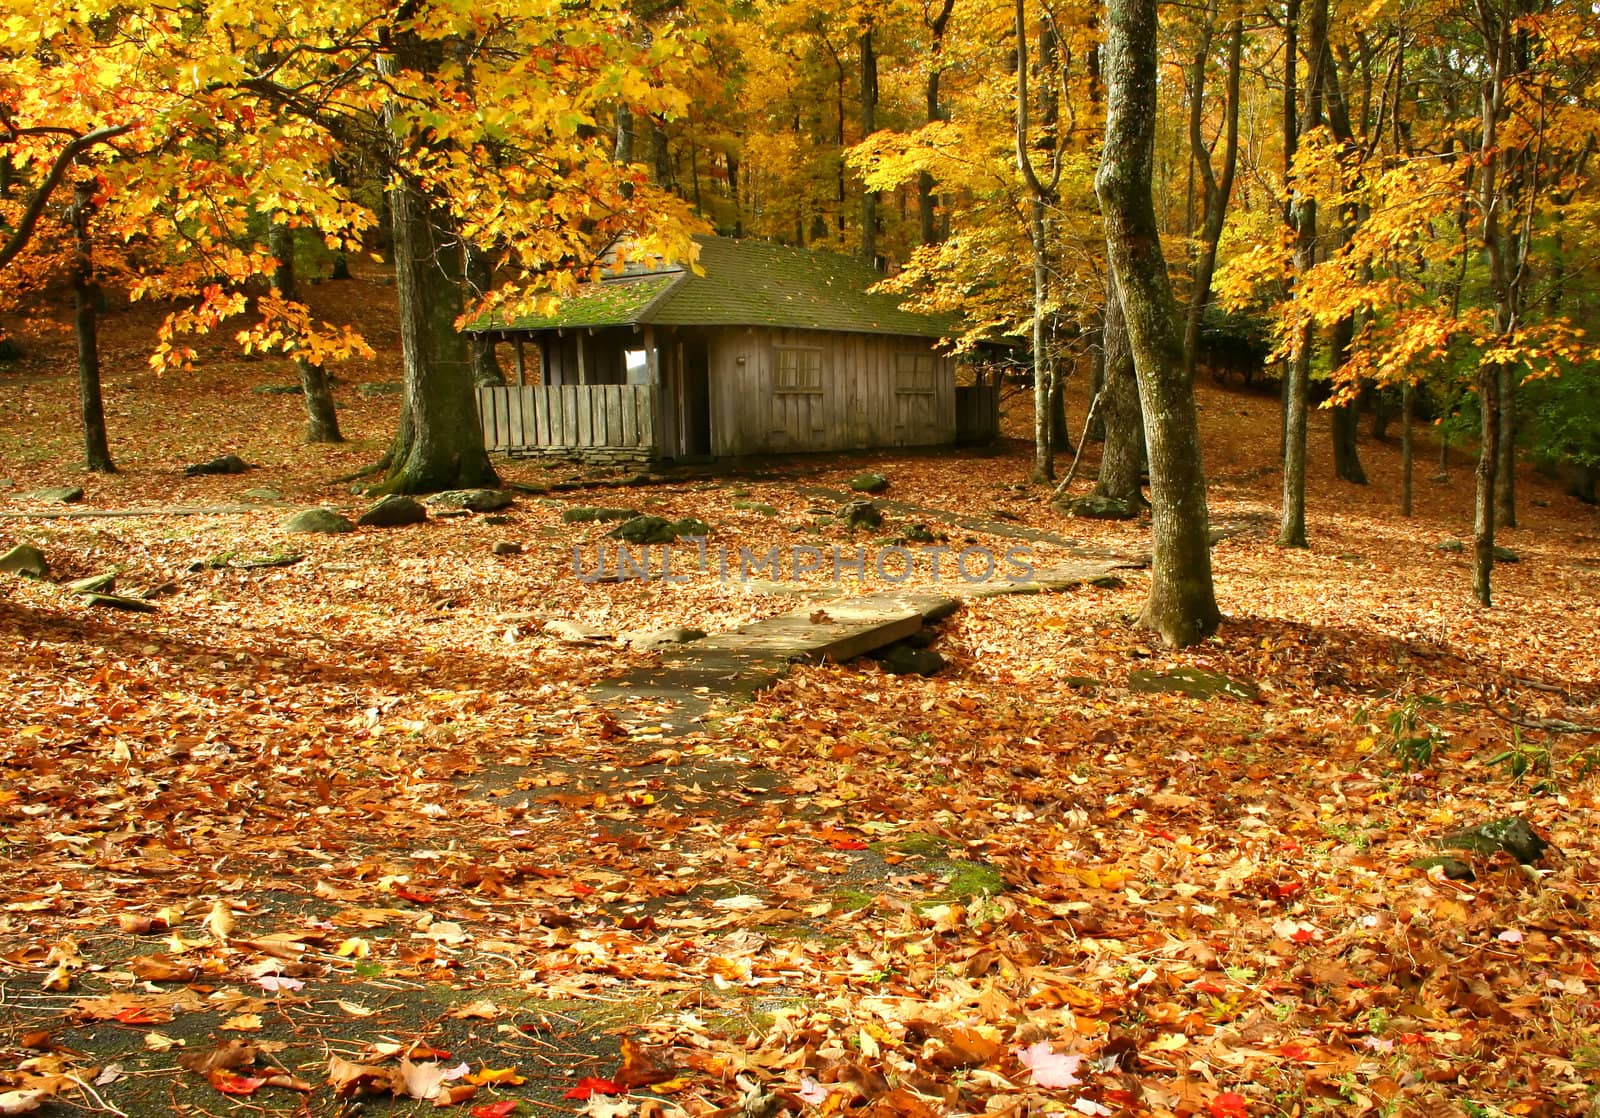 Autumn in Virginia by thephotoguy